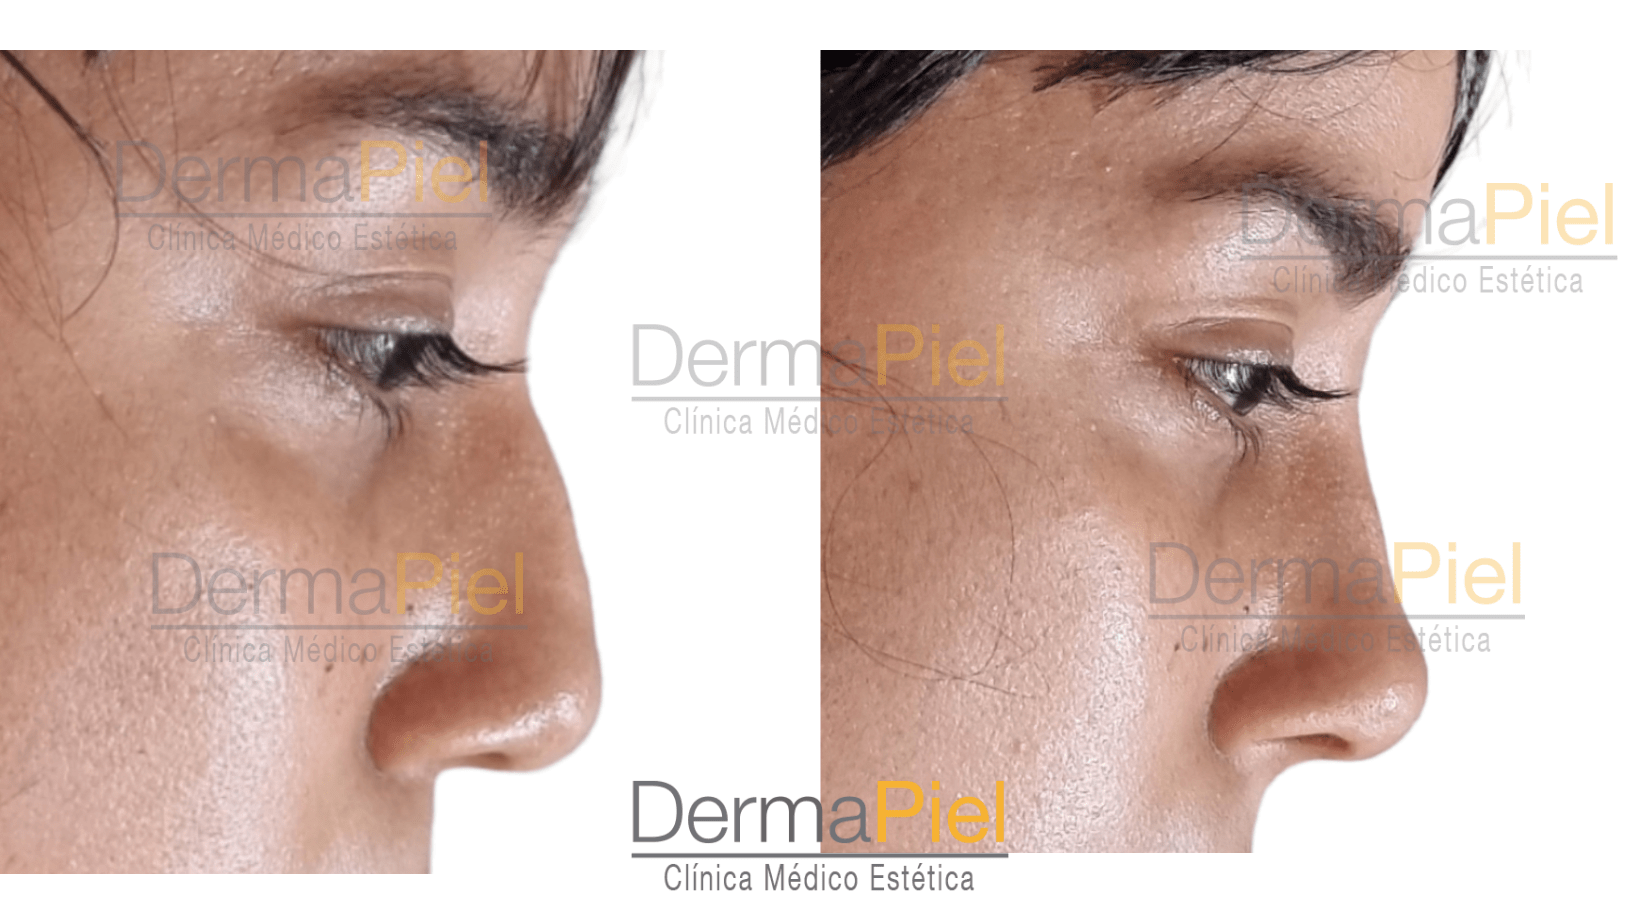 Dermapiel antes y despues de rellenos faciales con acido hialuronico